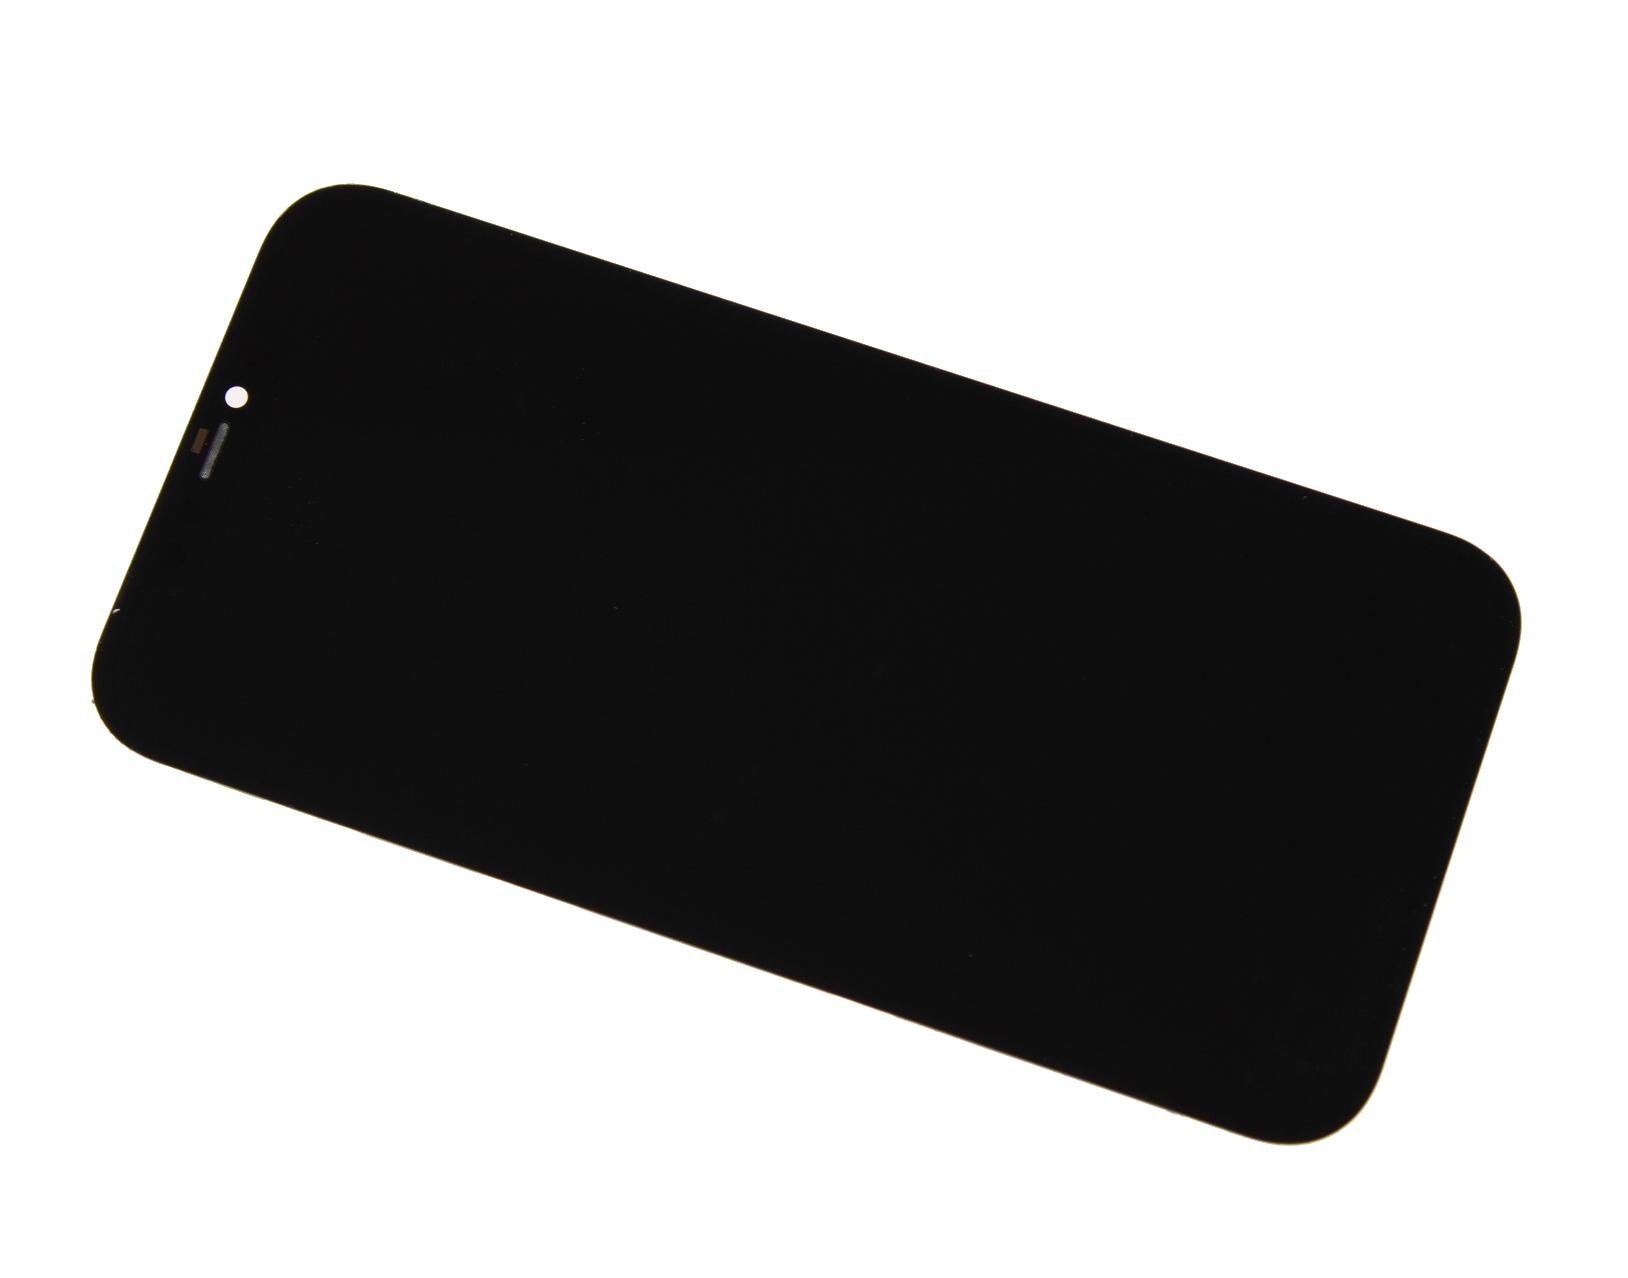 Originál LCD + Dotyková vrstva iPhone 12 Pro Max repasovaný díl - vyměněné sklíčko